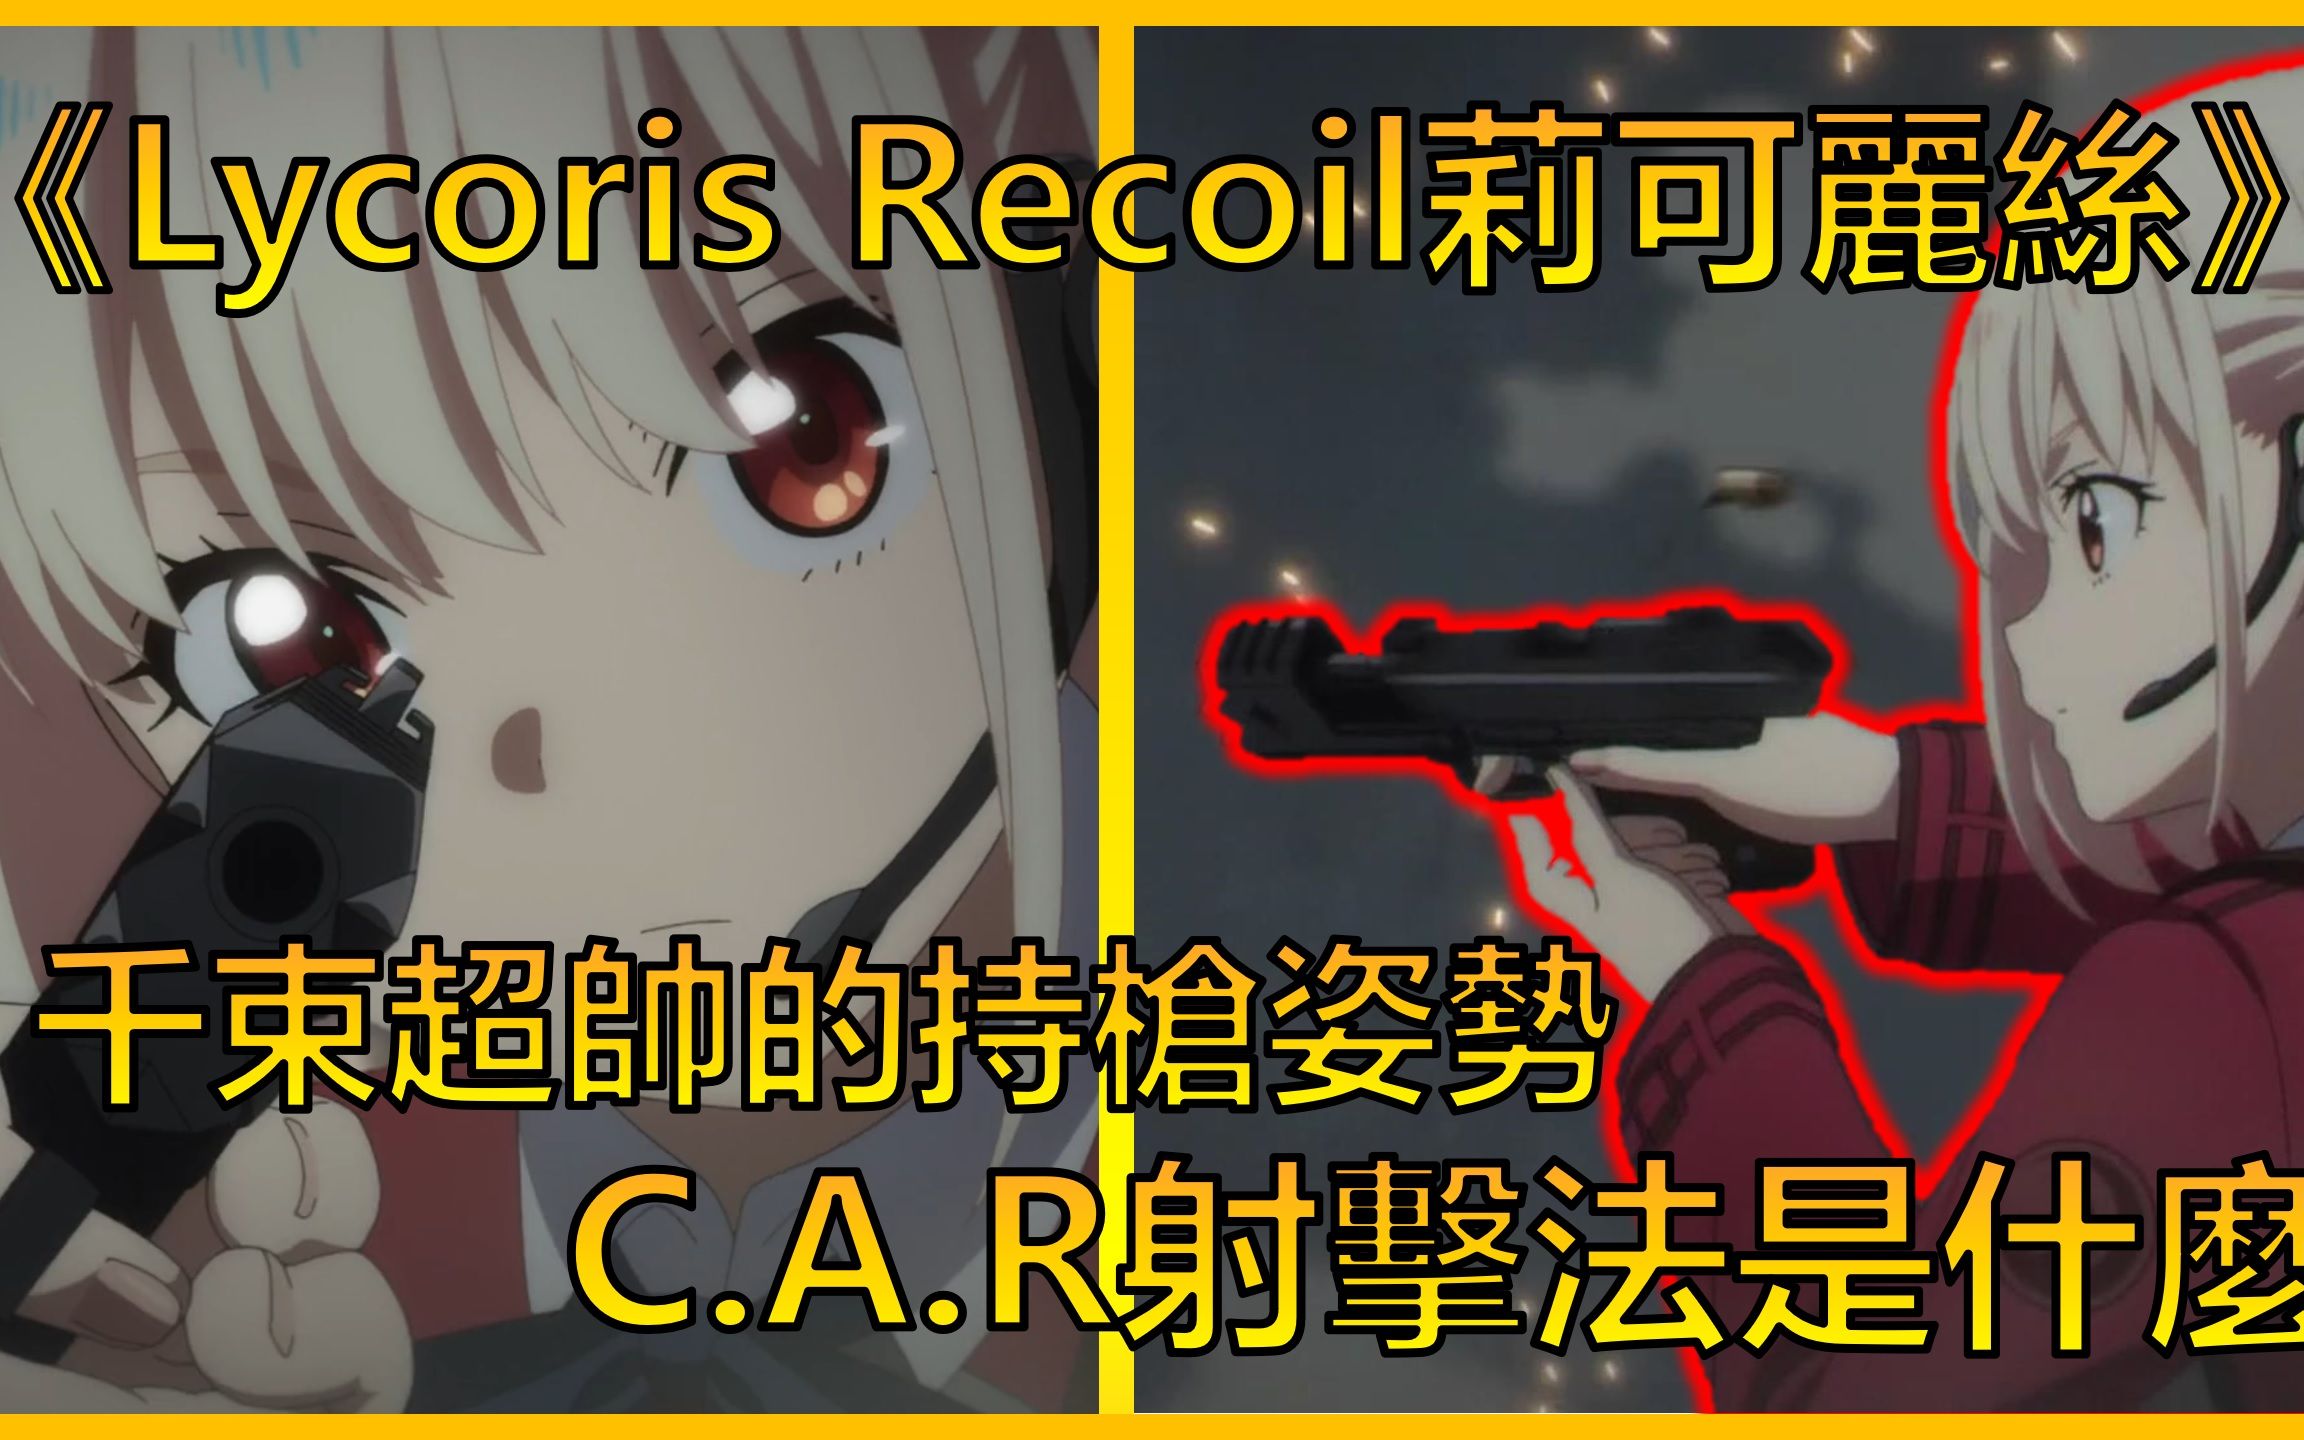 从《Lycoris Recoil》了解CAR射击法是什么 | ACG军武介绍#3